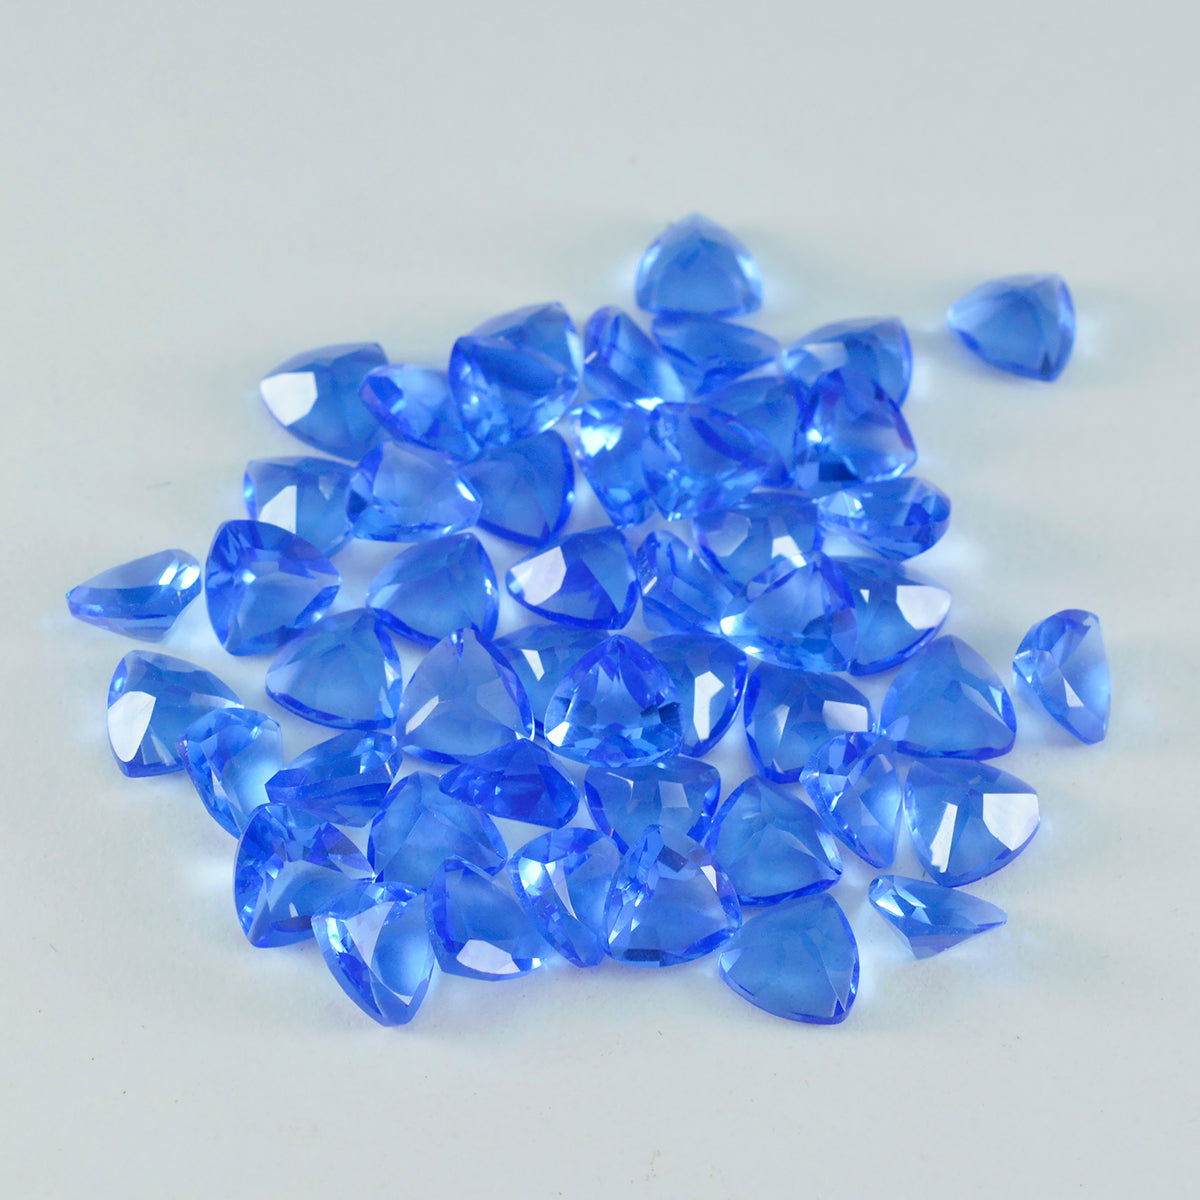 Riyogems 1pc saphir bleu cz facettes 8x8mm forme trillion merveilleuse qualité pierre précieuse en vrac